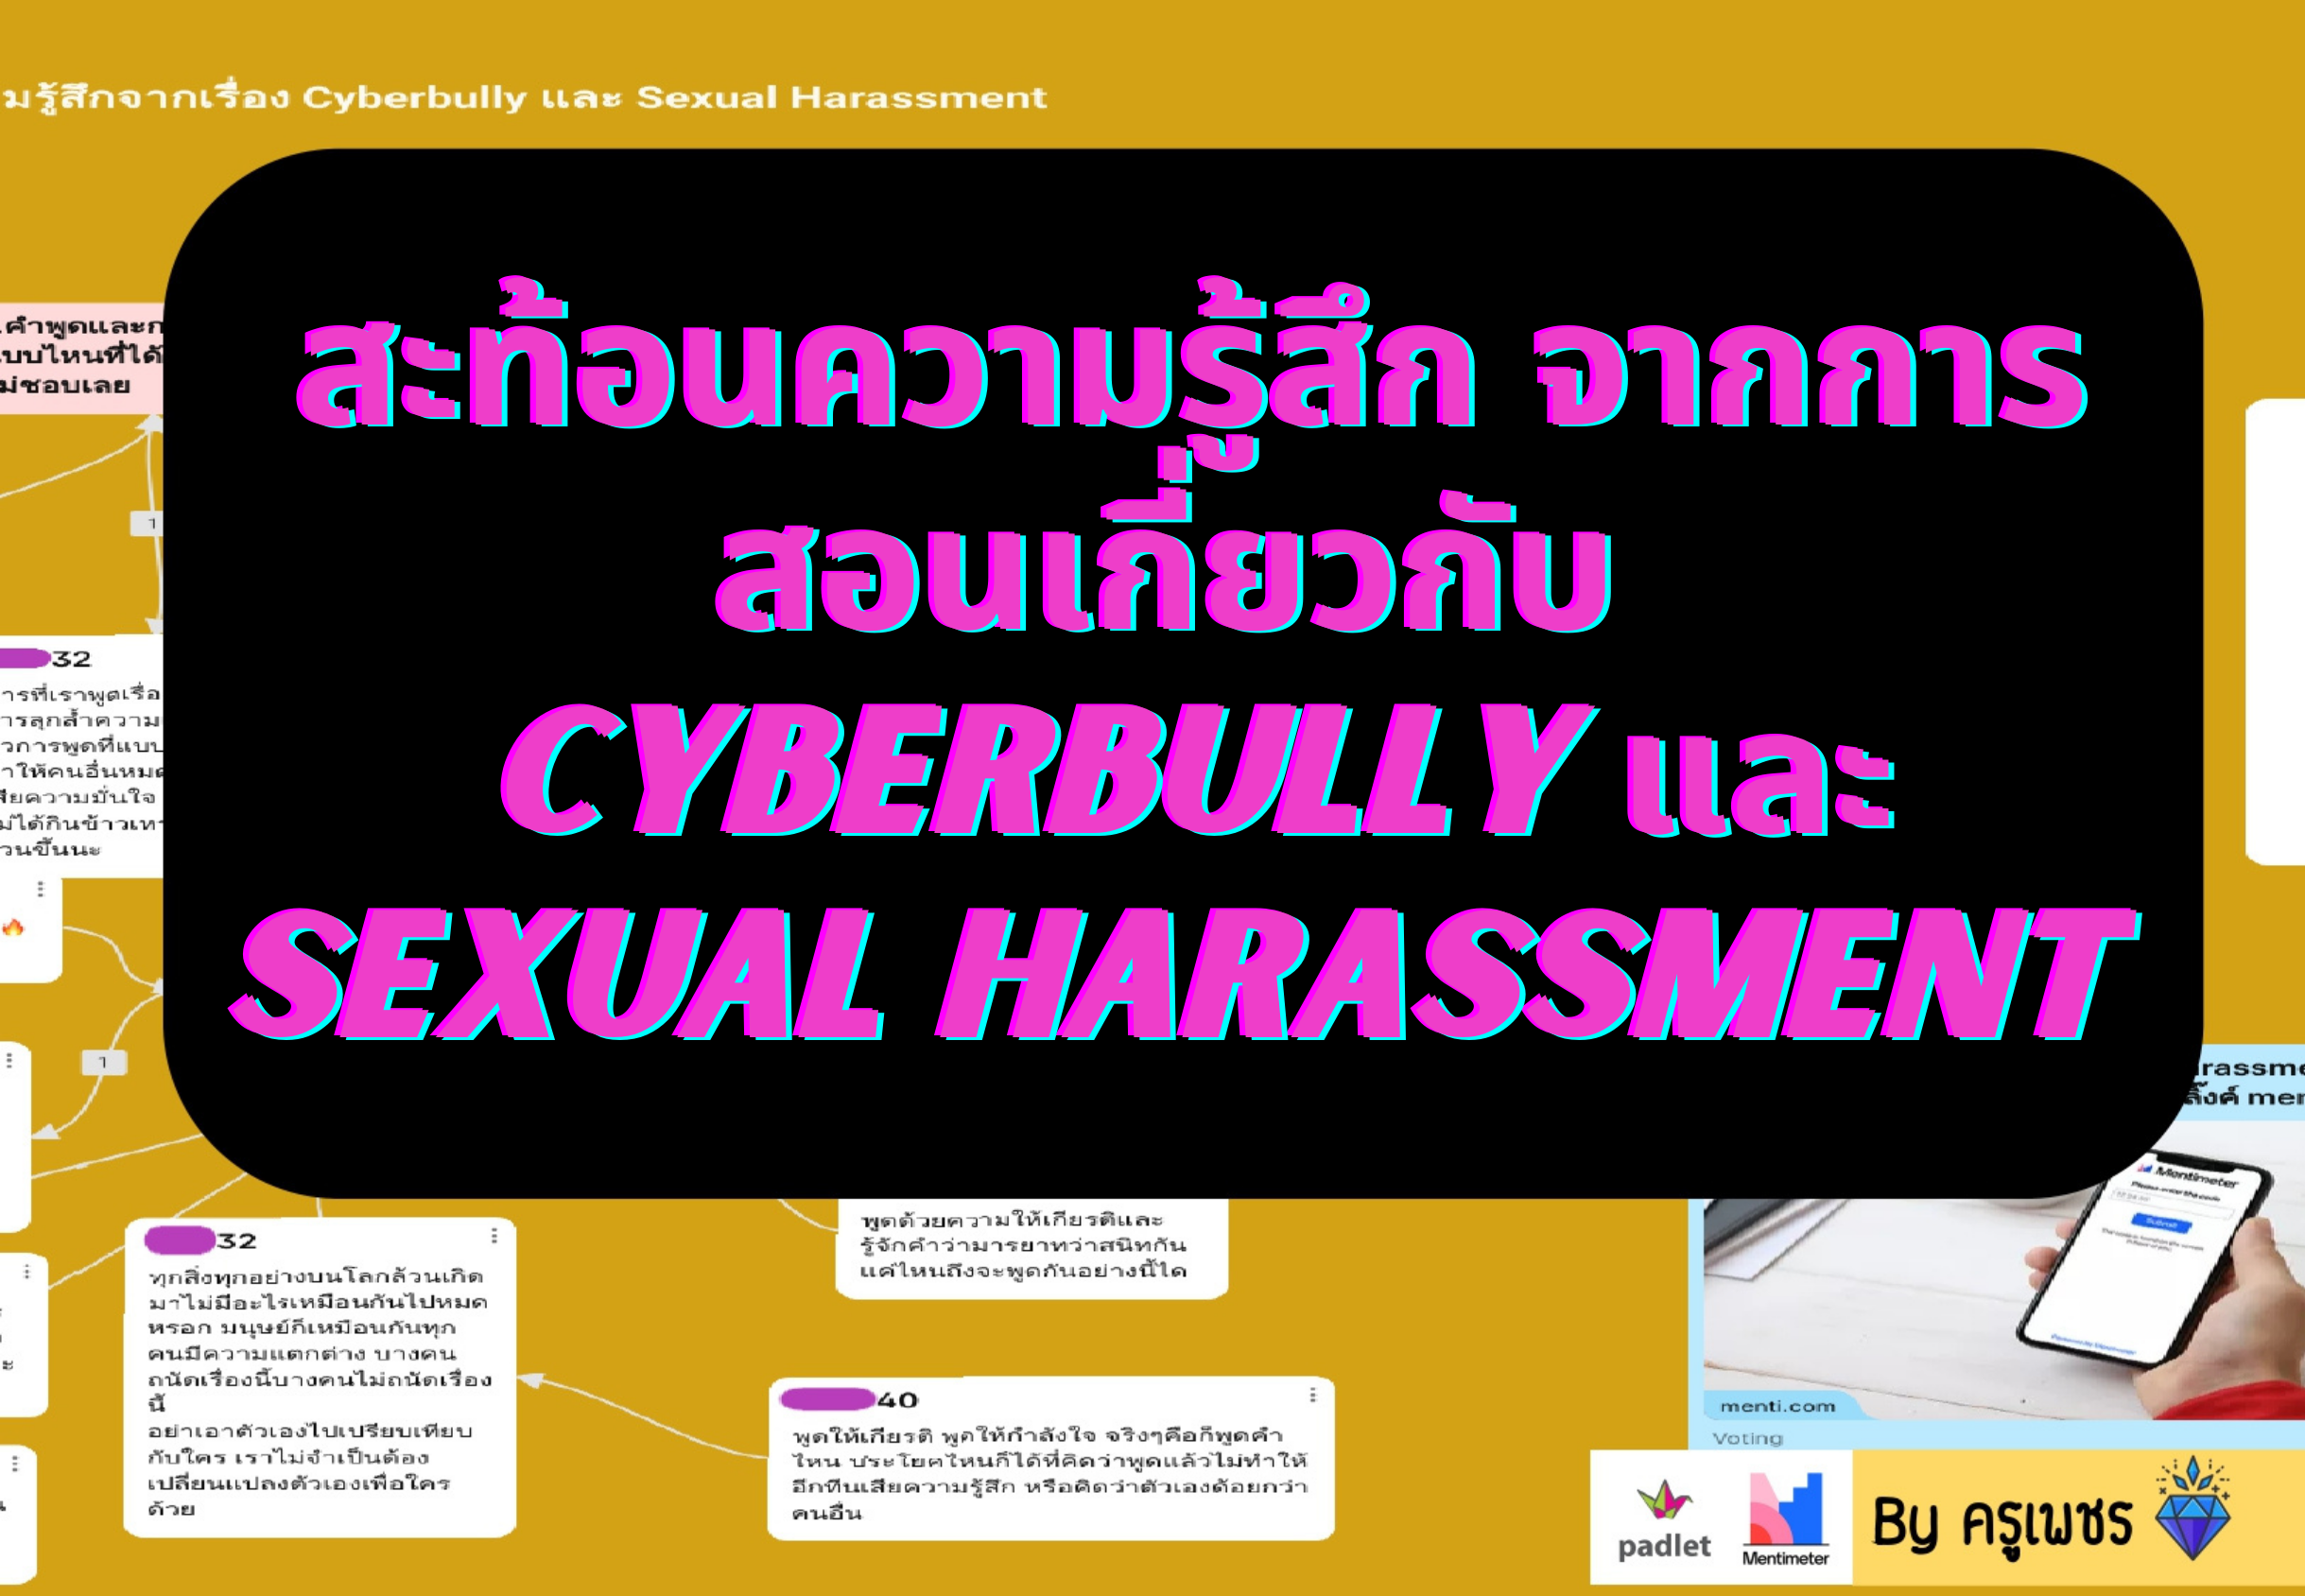 ภาพประกอบไอเดีย สะท้อนความรู้สึกในเรื่องCyberbully และ Harassment